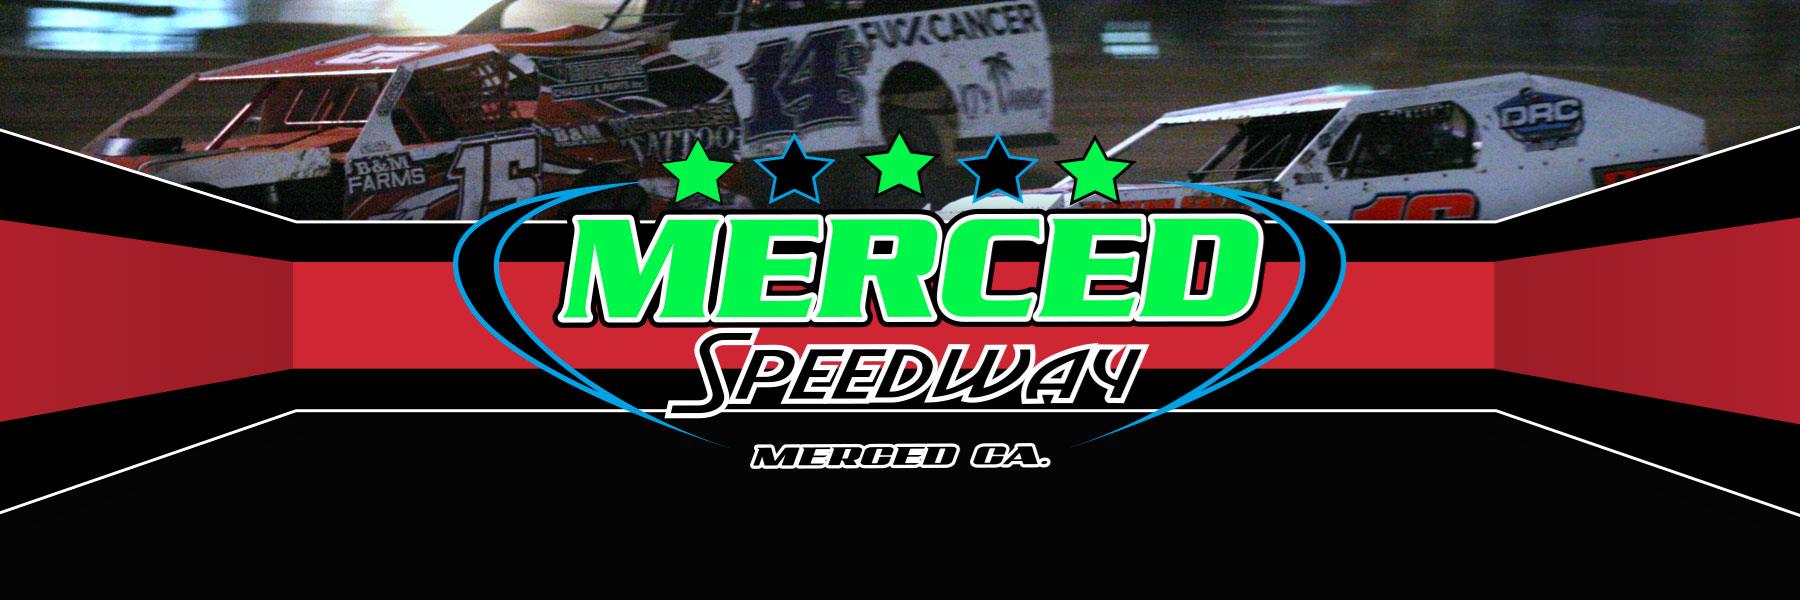 11/21/2020 - Merced Speedway